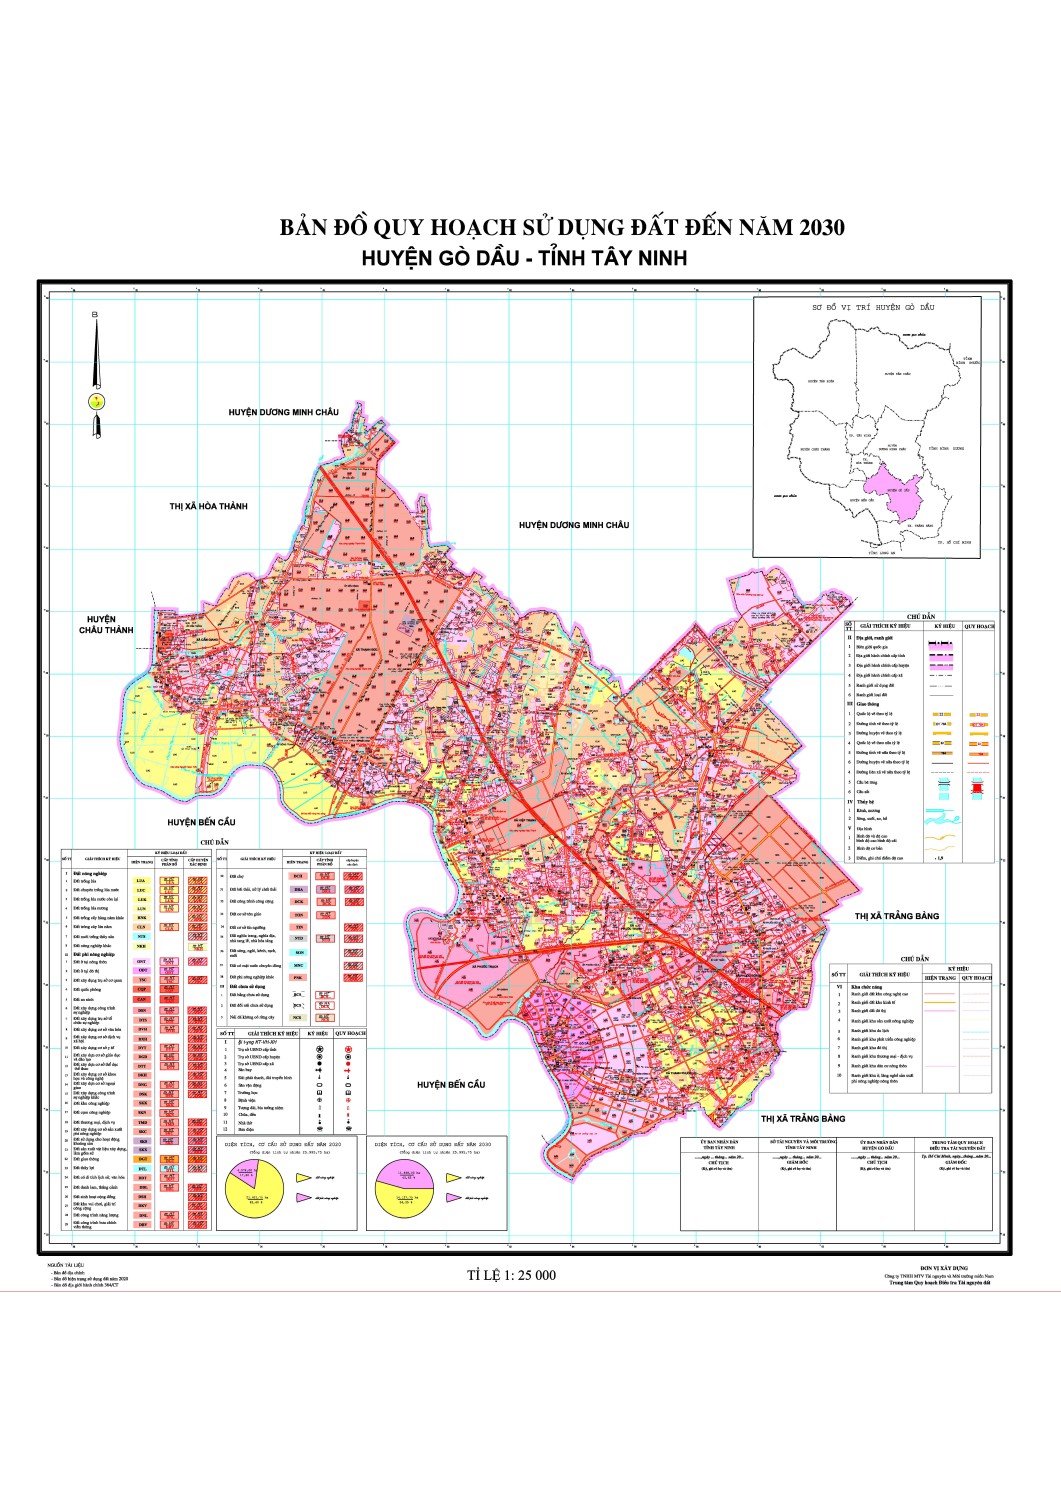 Bản đồ quy hoạch sử dụng đất Gò Dầu đến năm 2030 với các chỉ tiêu quy hoạch chi tiết đã được xác định rõ ràng. Bản đồ cung cấp thông tin về việc sử dụng đất, vị trí hạ tầng giao thông, khu dân cư và tiện ích công cộng trong khu vực. Điều này sẽ giúp cho chính quyền địa phương lập kế hoạch phát triển bền vững dựa trên sự chính xác và đầy đủ của bản đồ.